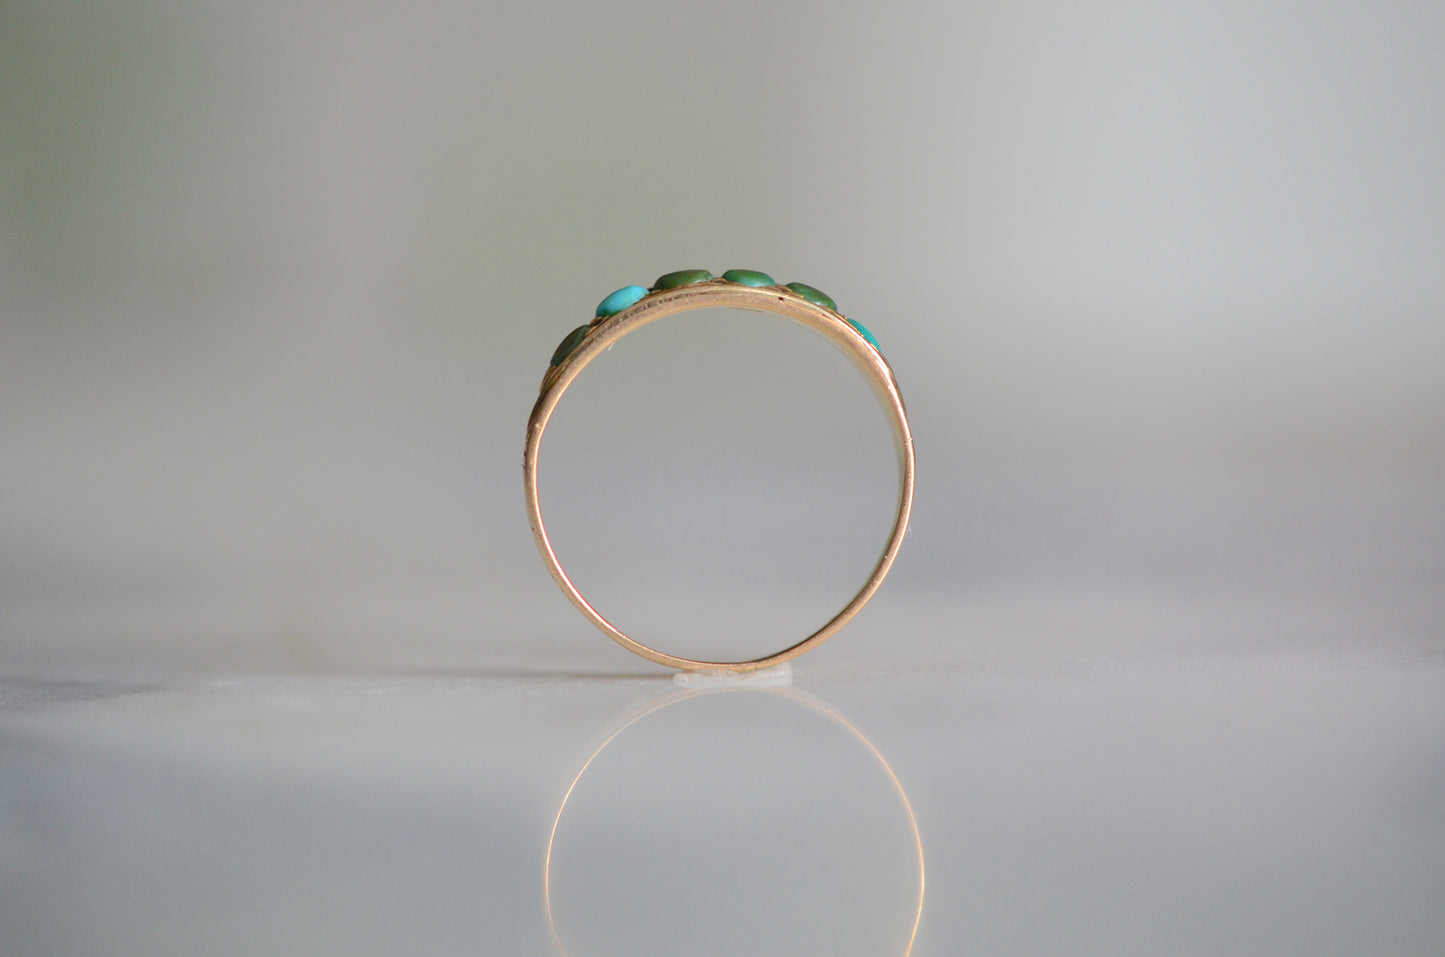 Exquisite Victorian Turquoise Half Hoop Ring 1865